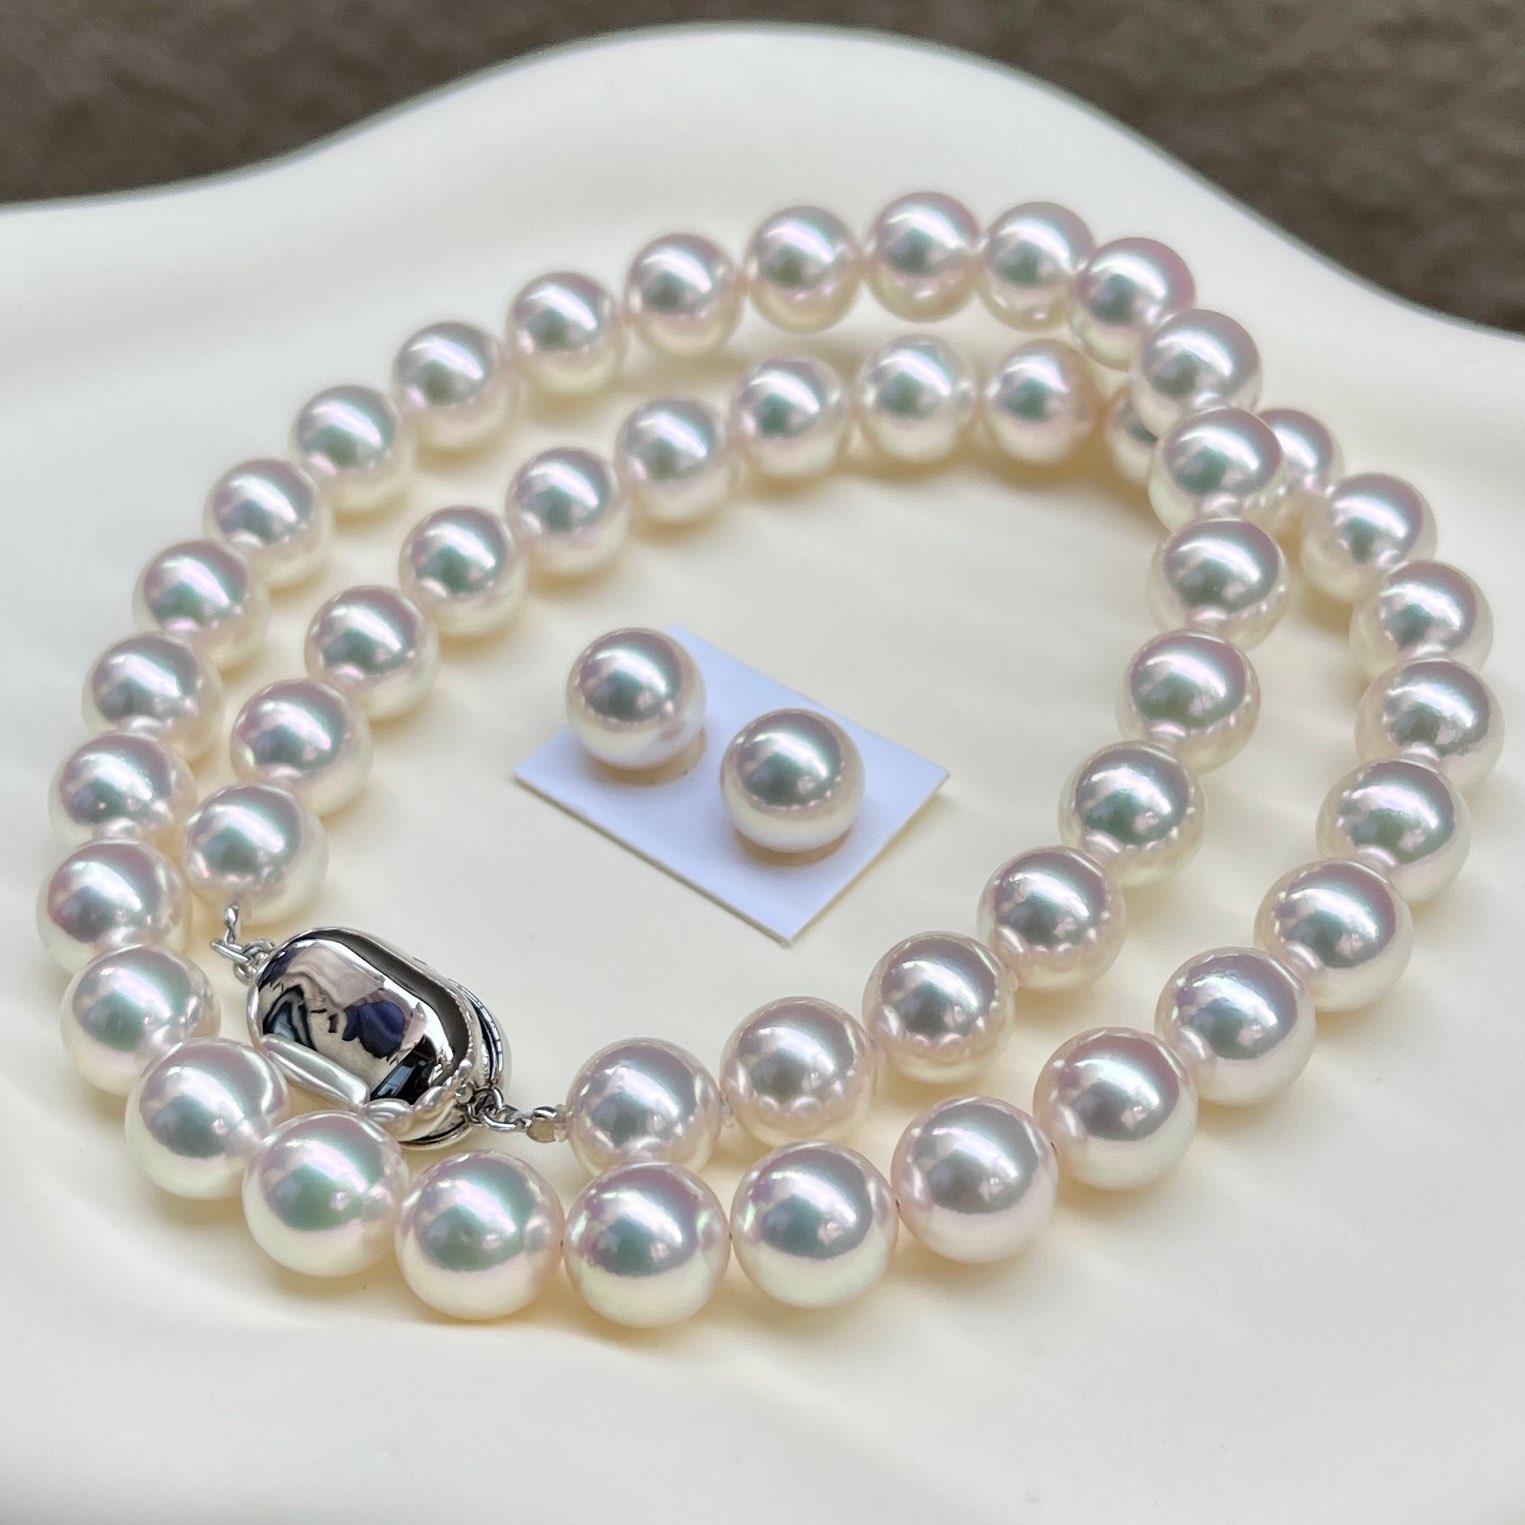 オーロラ天女あこや真珠ネックレス8.5-9.0㎜ペア付きTOP ELEGANTモデルセットを斜め前から見ている